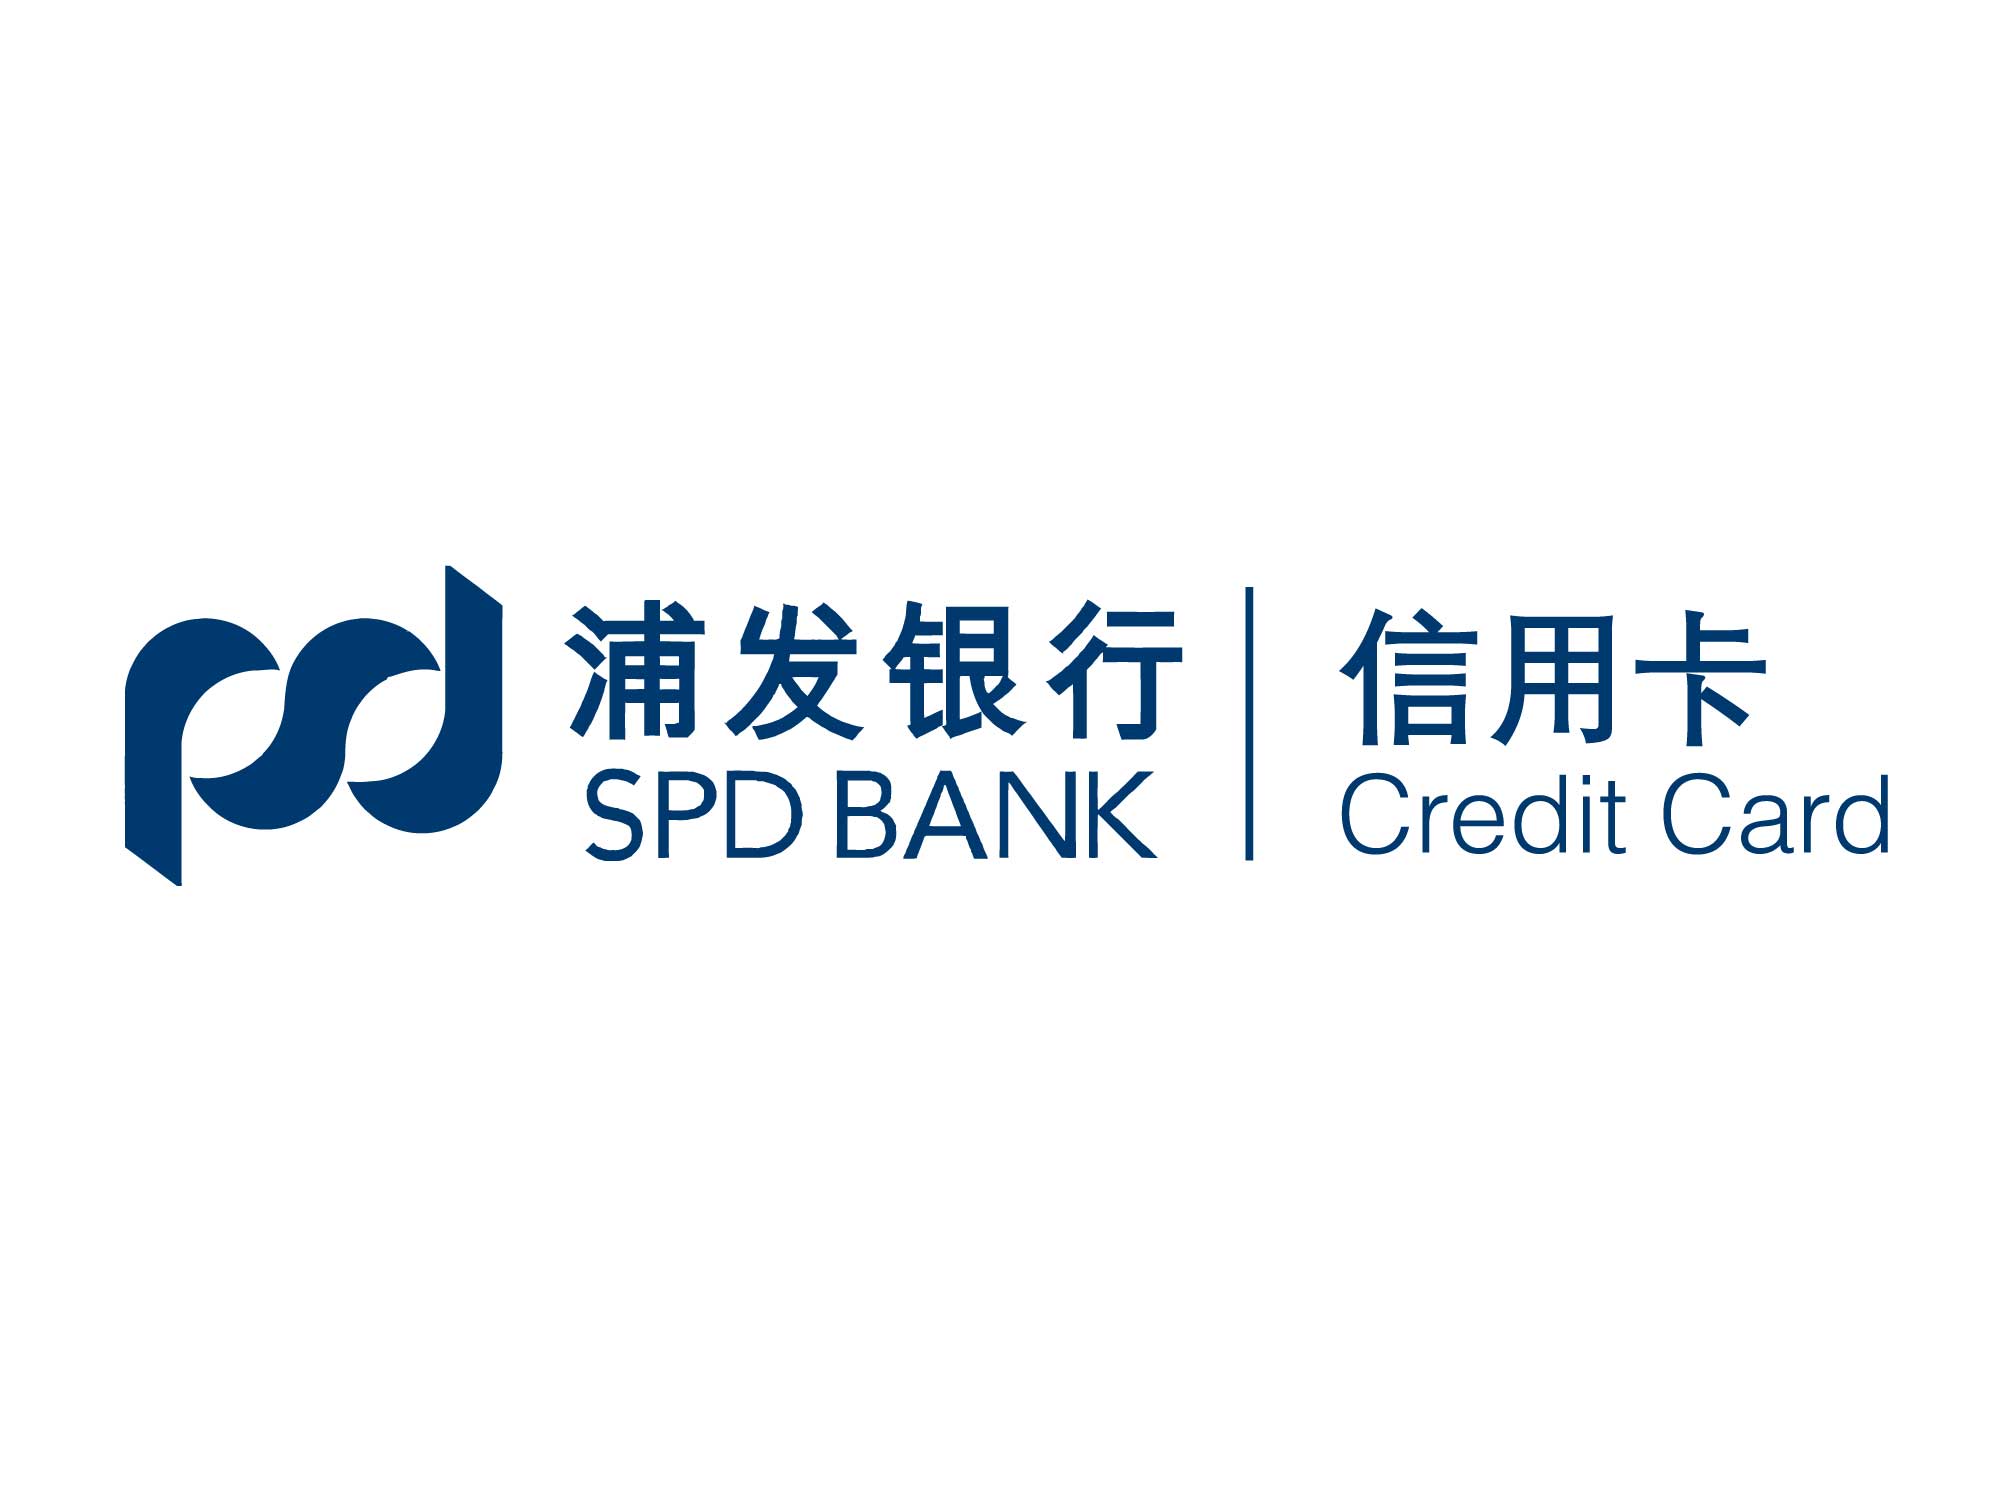 Спд банк. Банк Shanghai Pudong Development Bank. Shanghai Pudong Development Bank карта. Реквизиты банка Shanghai Pudong Development Bank. SPD.